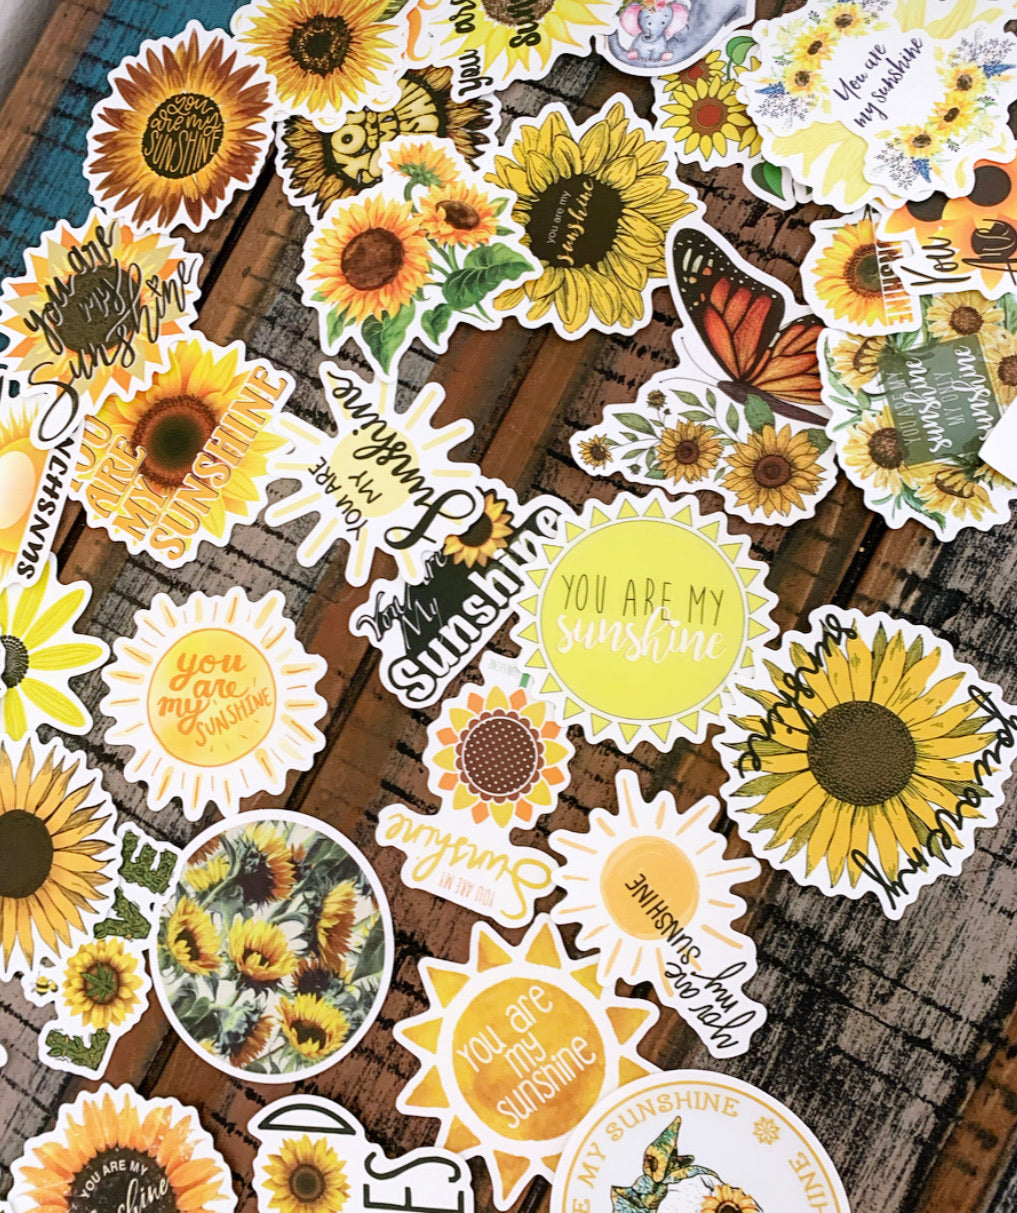 Sunflower stickers